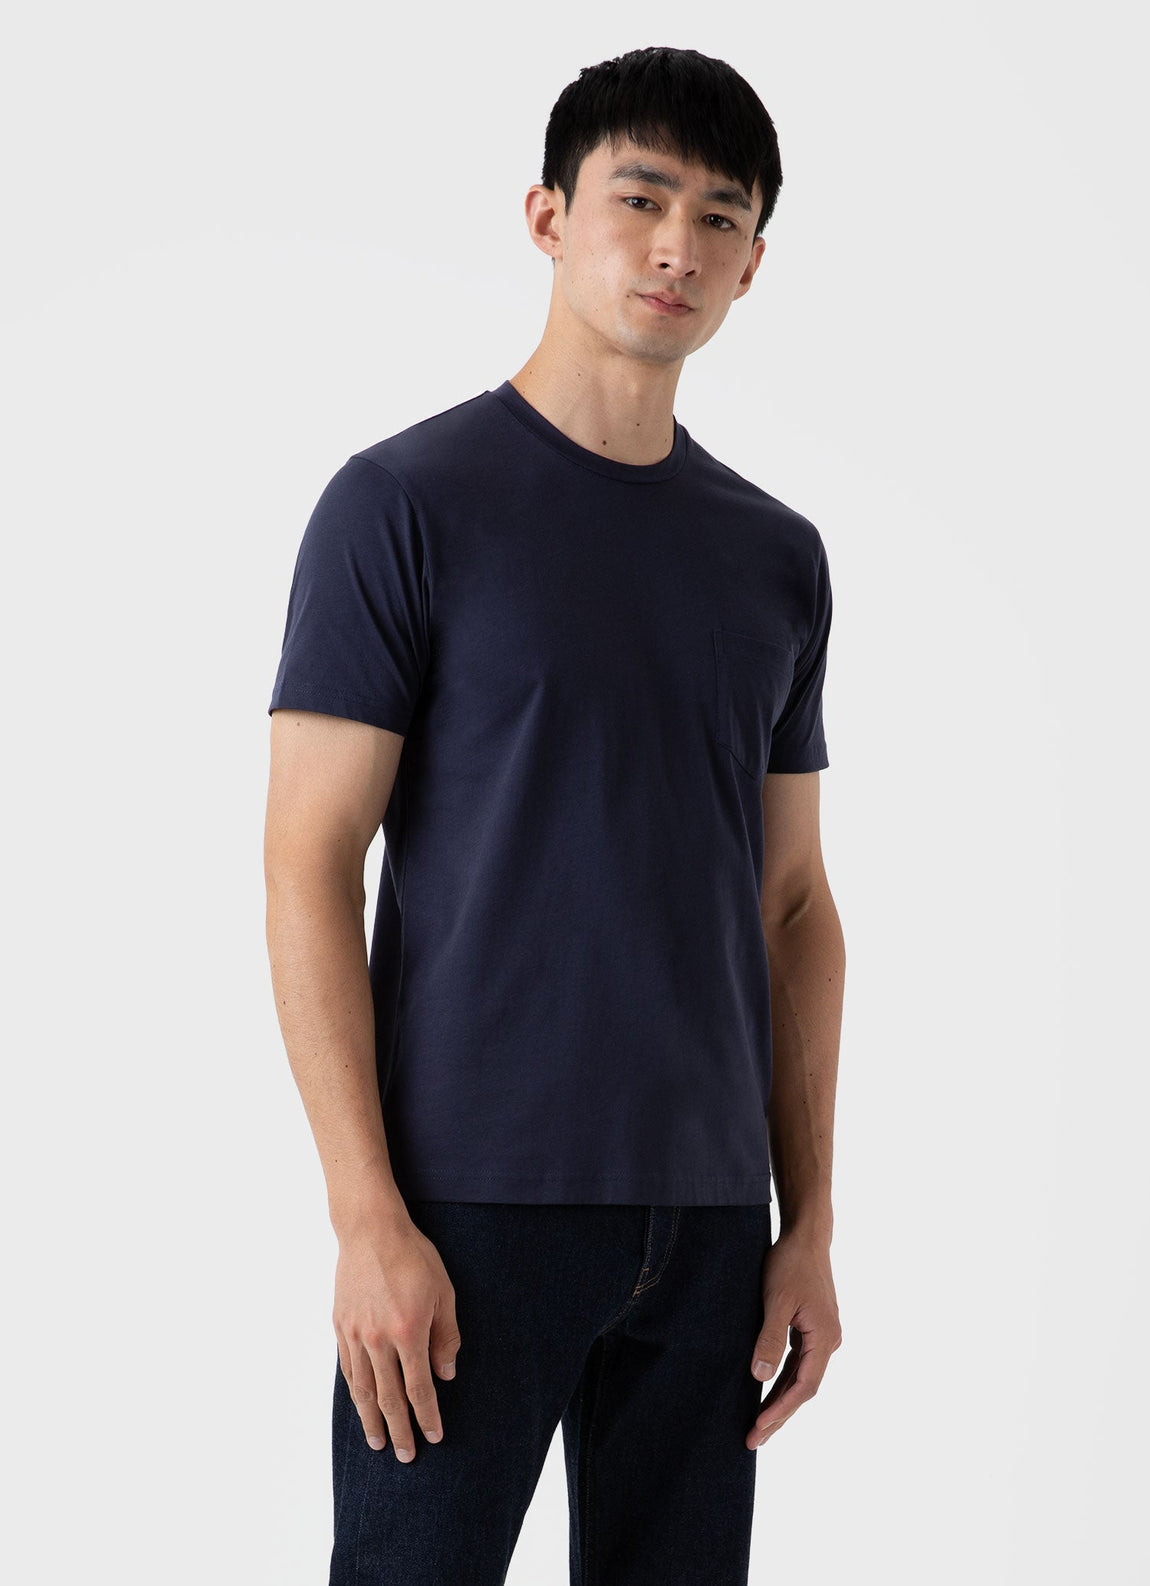 Men's Riviera Pocket T-shirt in Navy